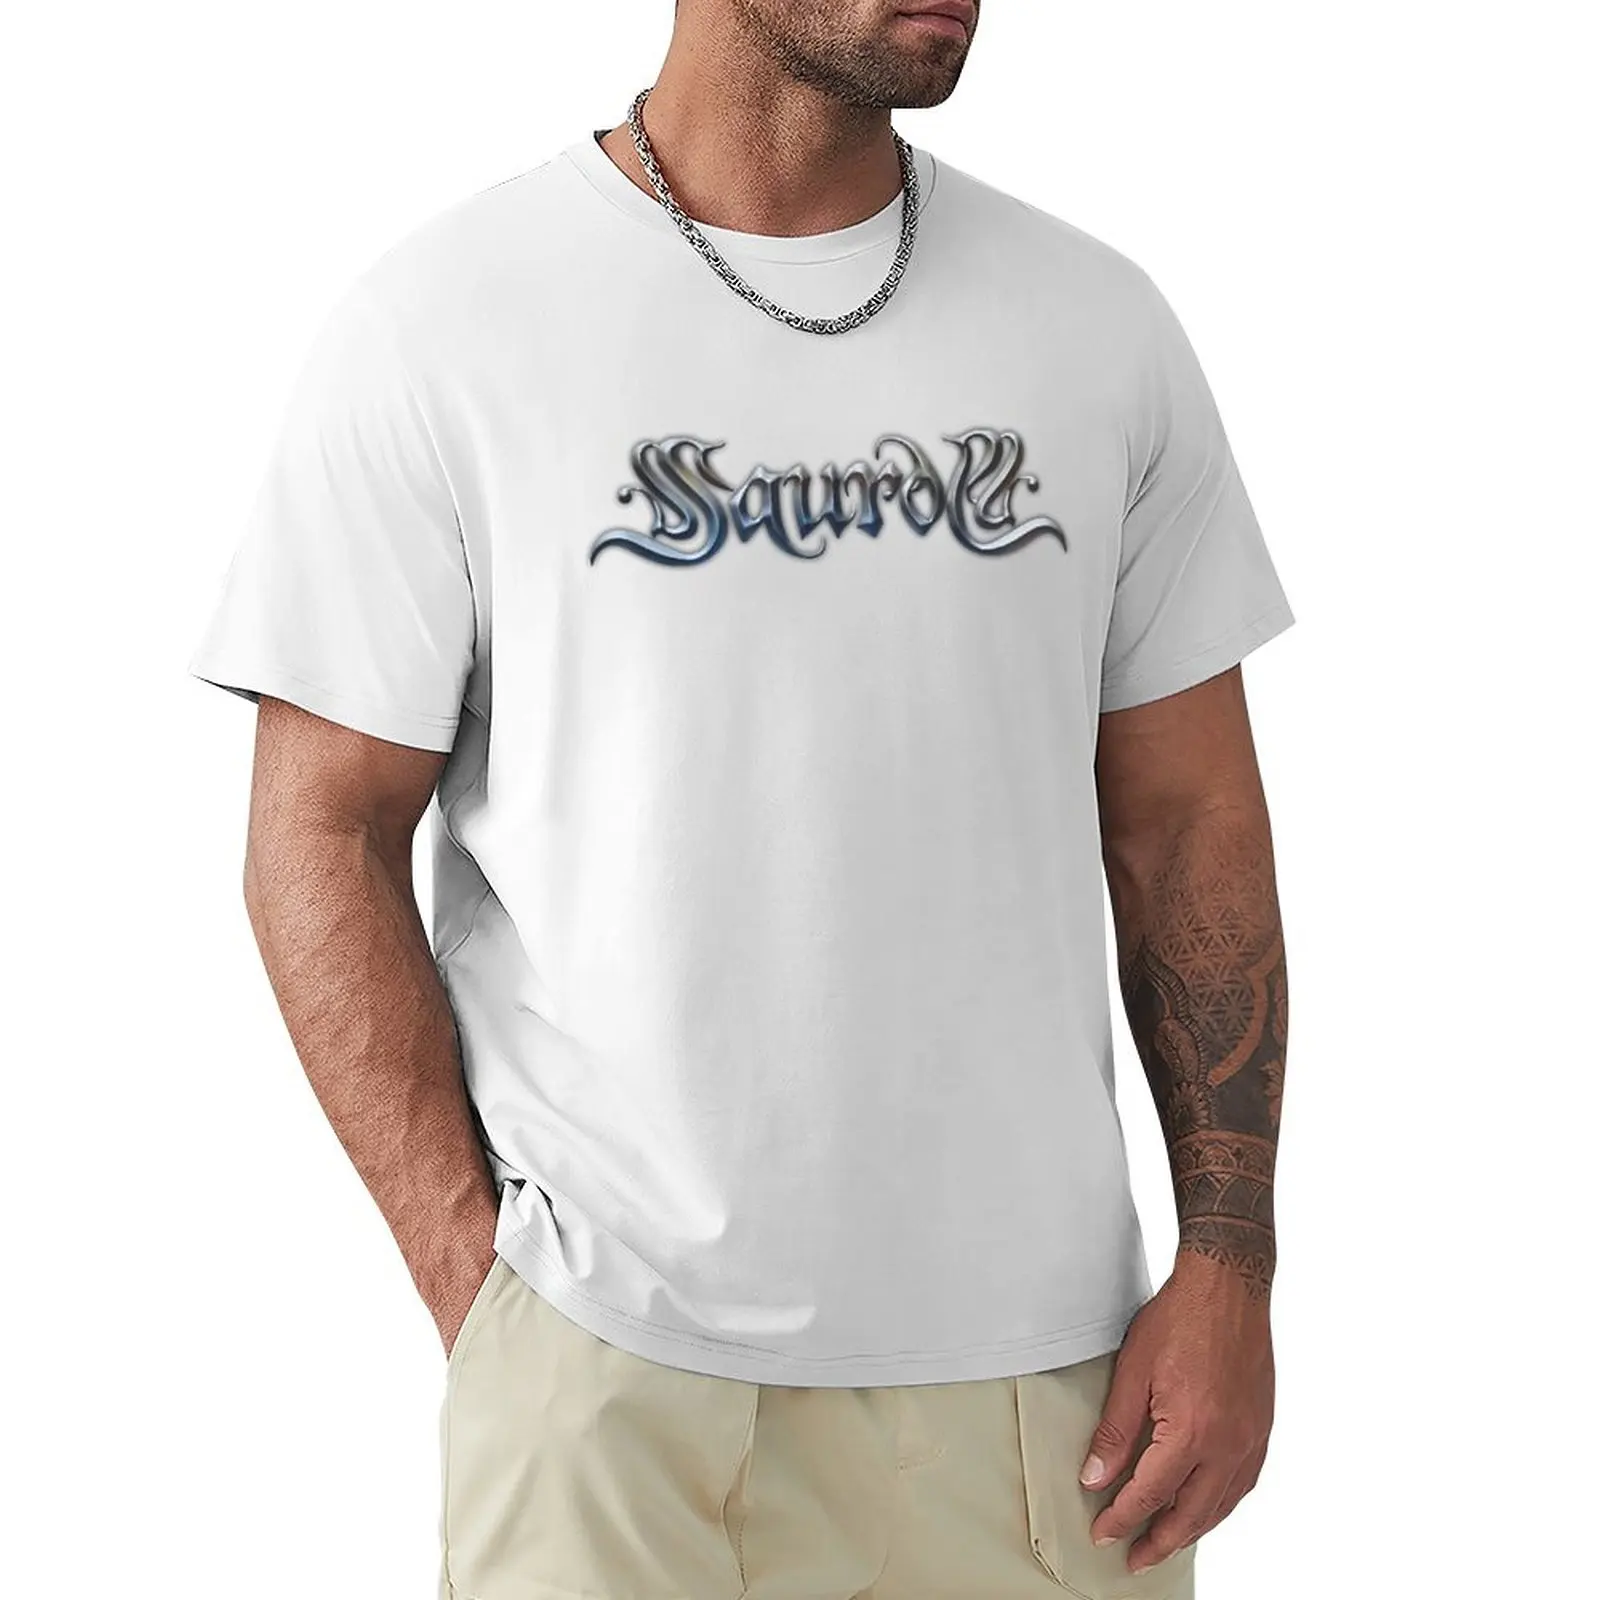 Saurom-Camiseta de Rock Band española para hombre, ropa estética de gran tamaño, camisetas grandes y altas